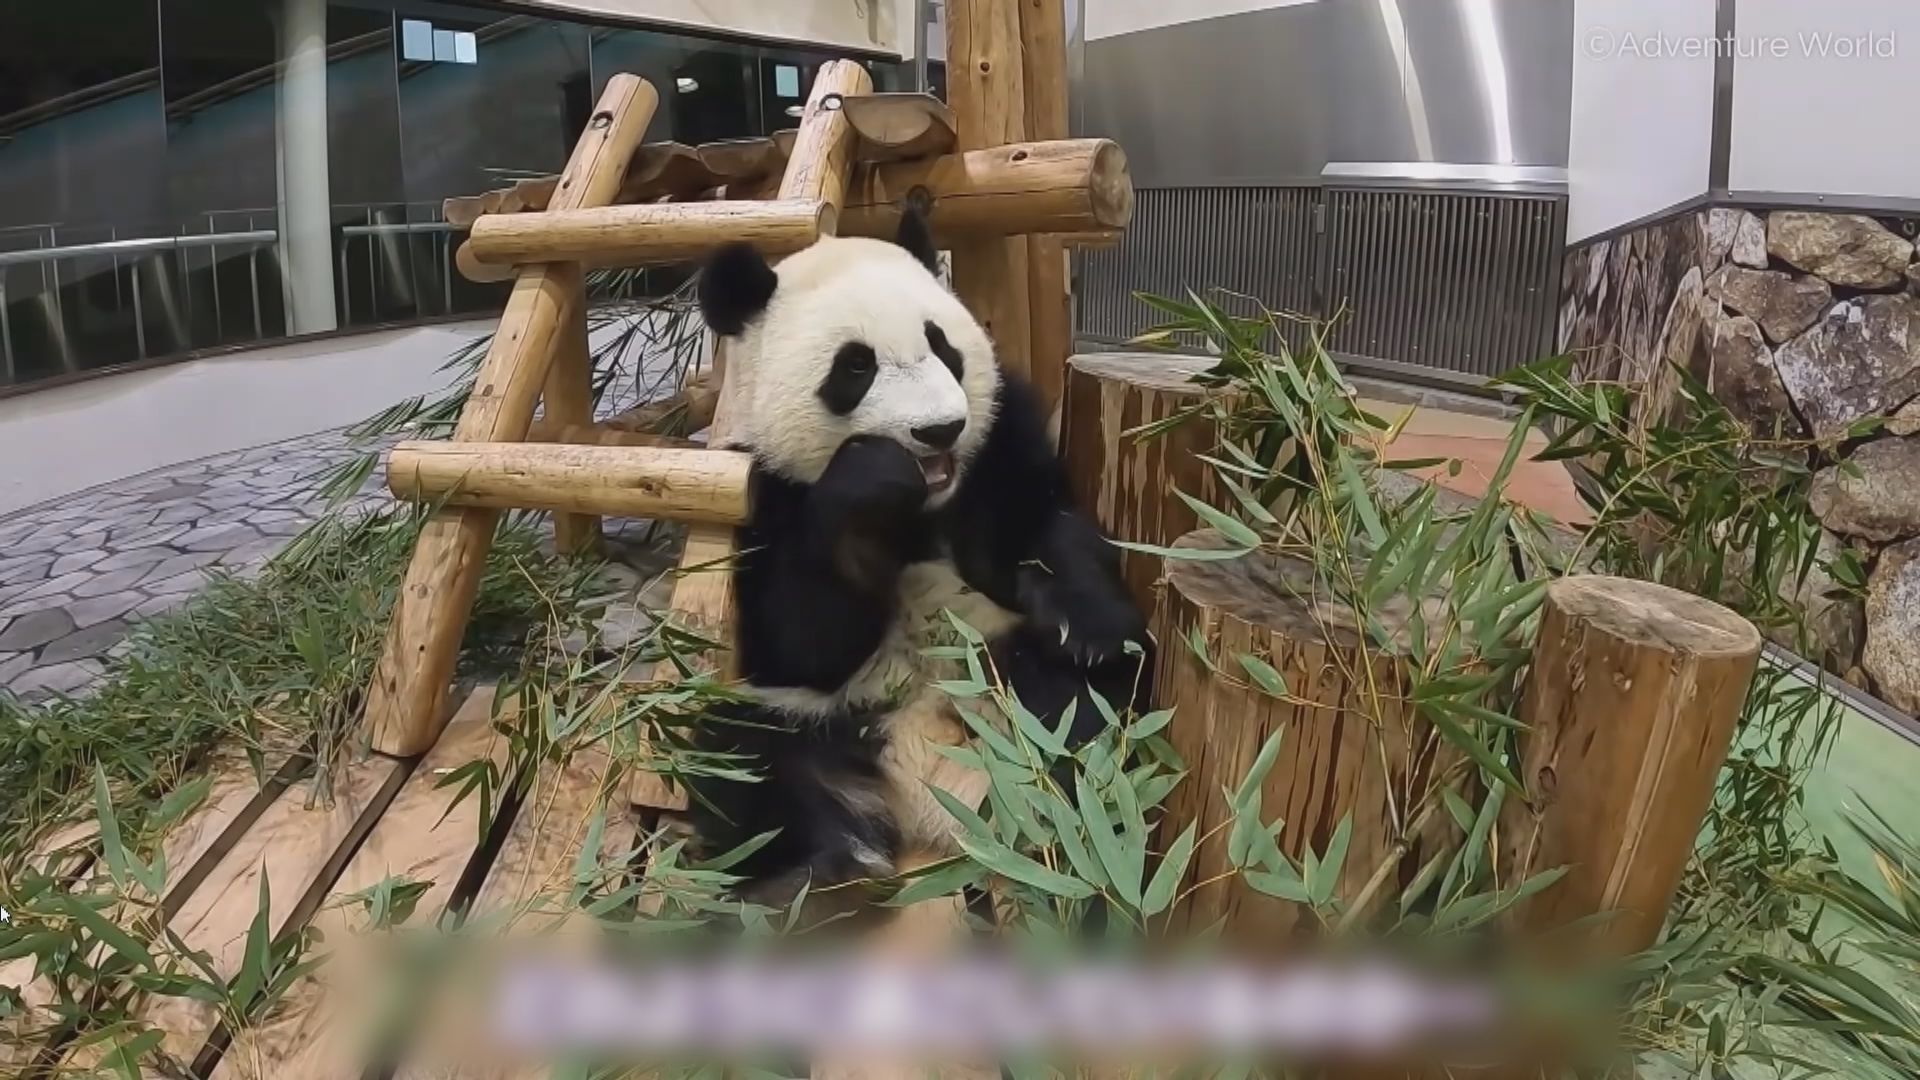 【環球薈報】日本上野動物園限制參觀大熊貓雙胞胎人數